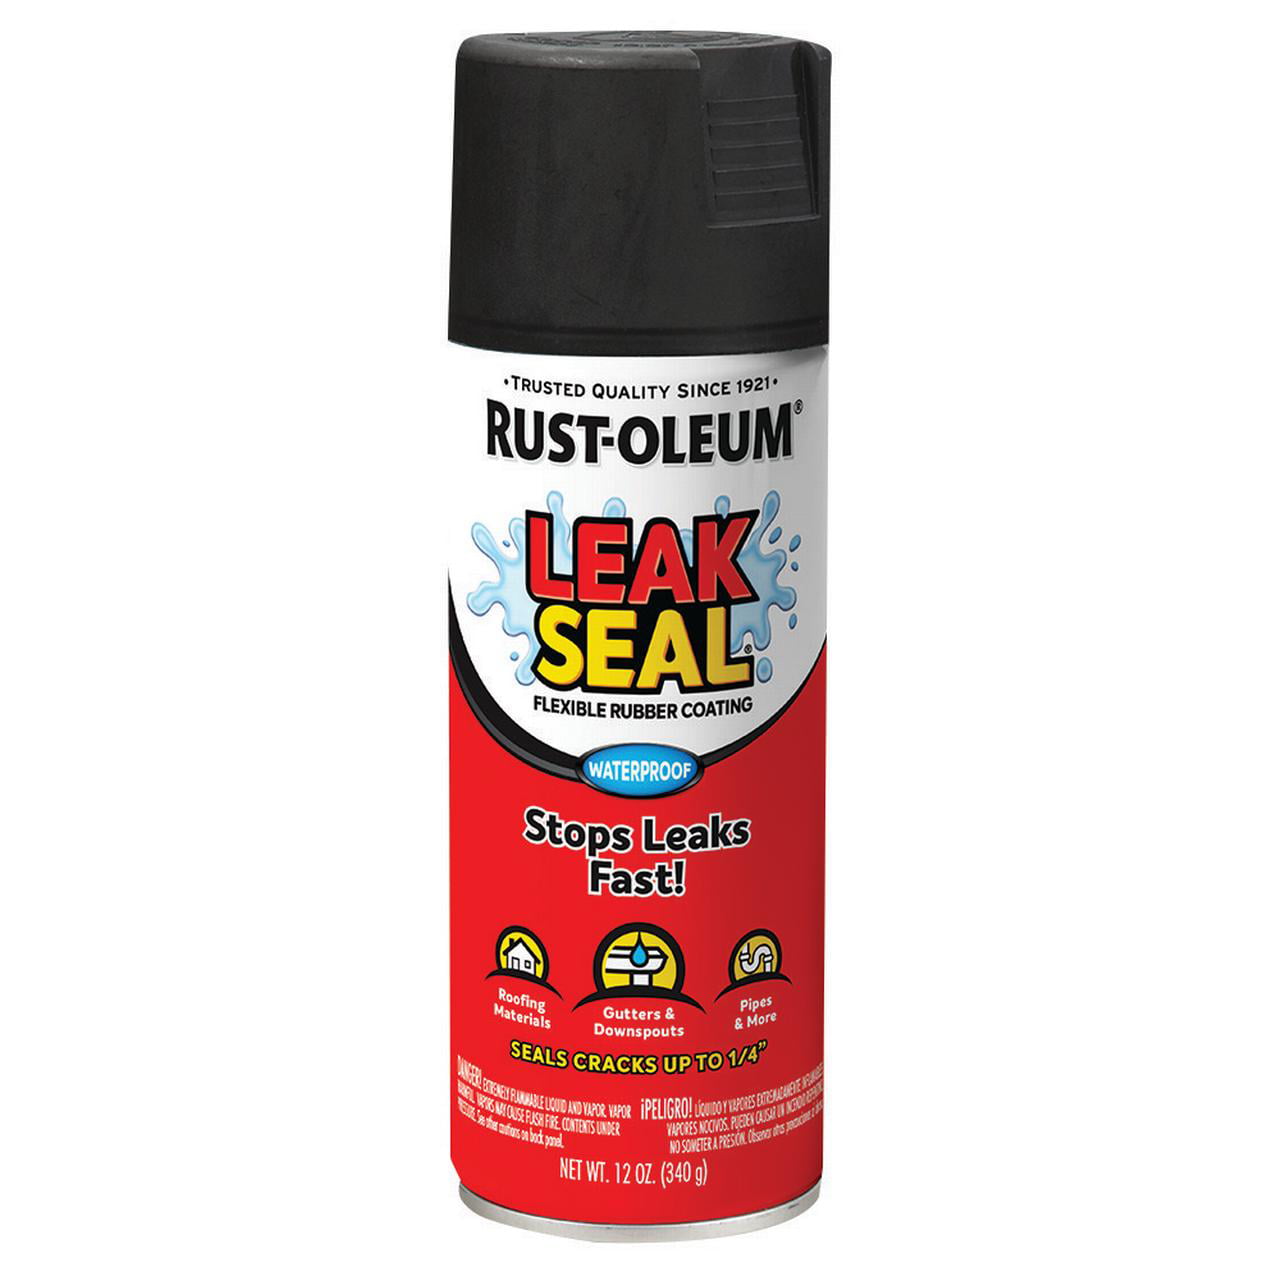 engel ingewikkeld radar Black, Rust-Oleum LeakSeal Flexible Rubber Coating Spray Paint 12 oz -  Walmart.com